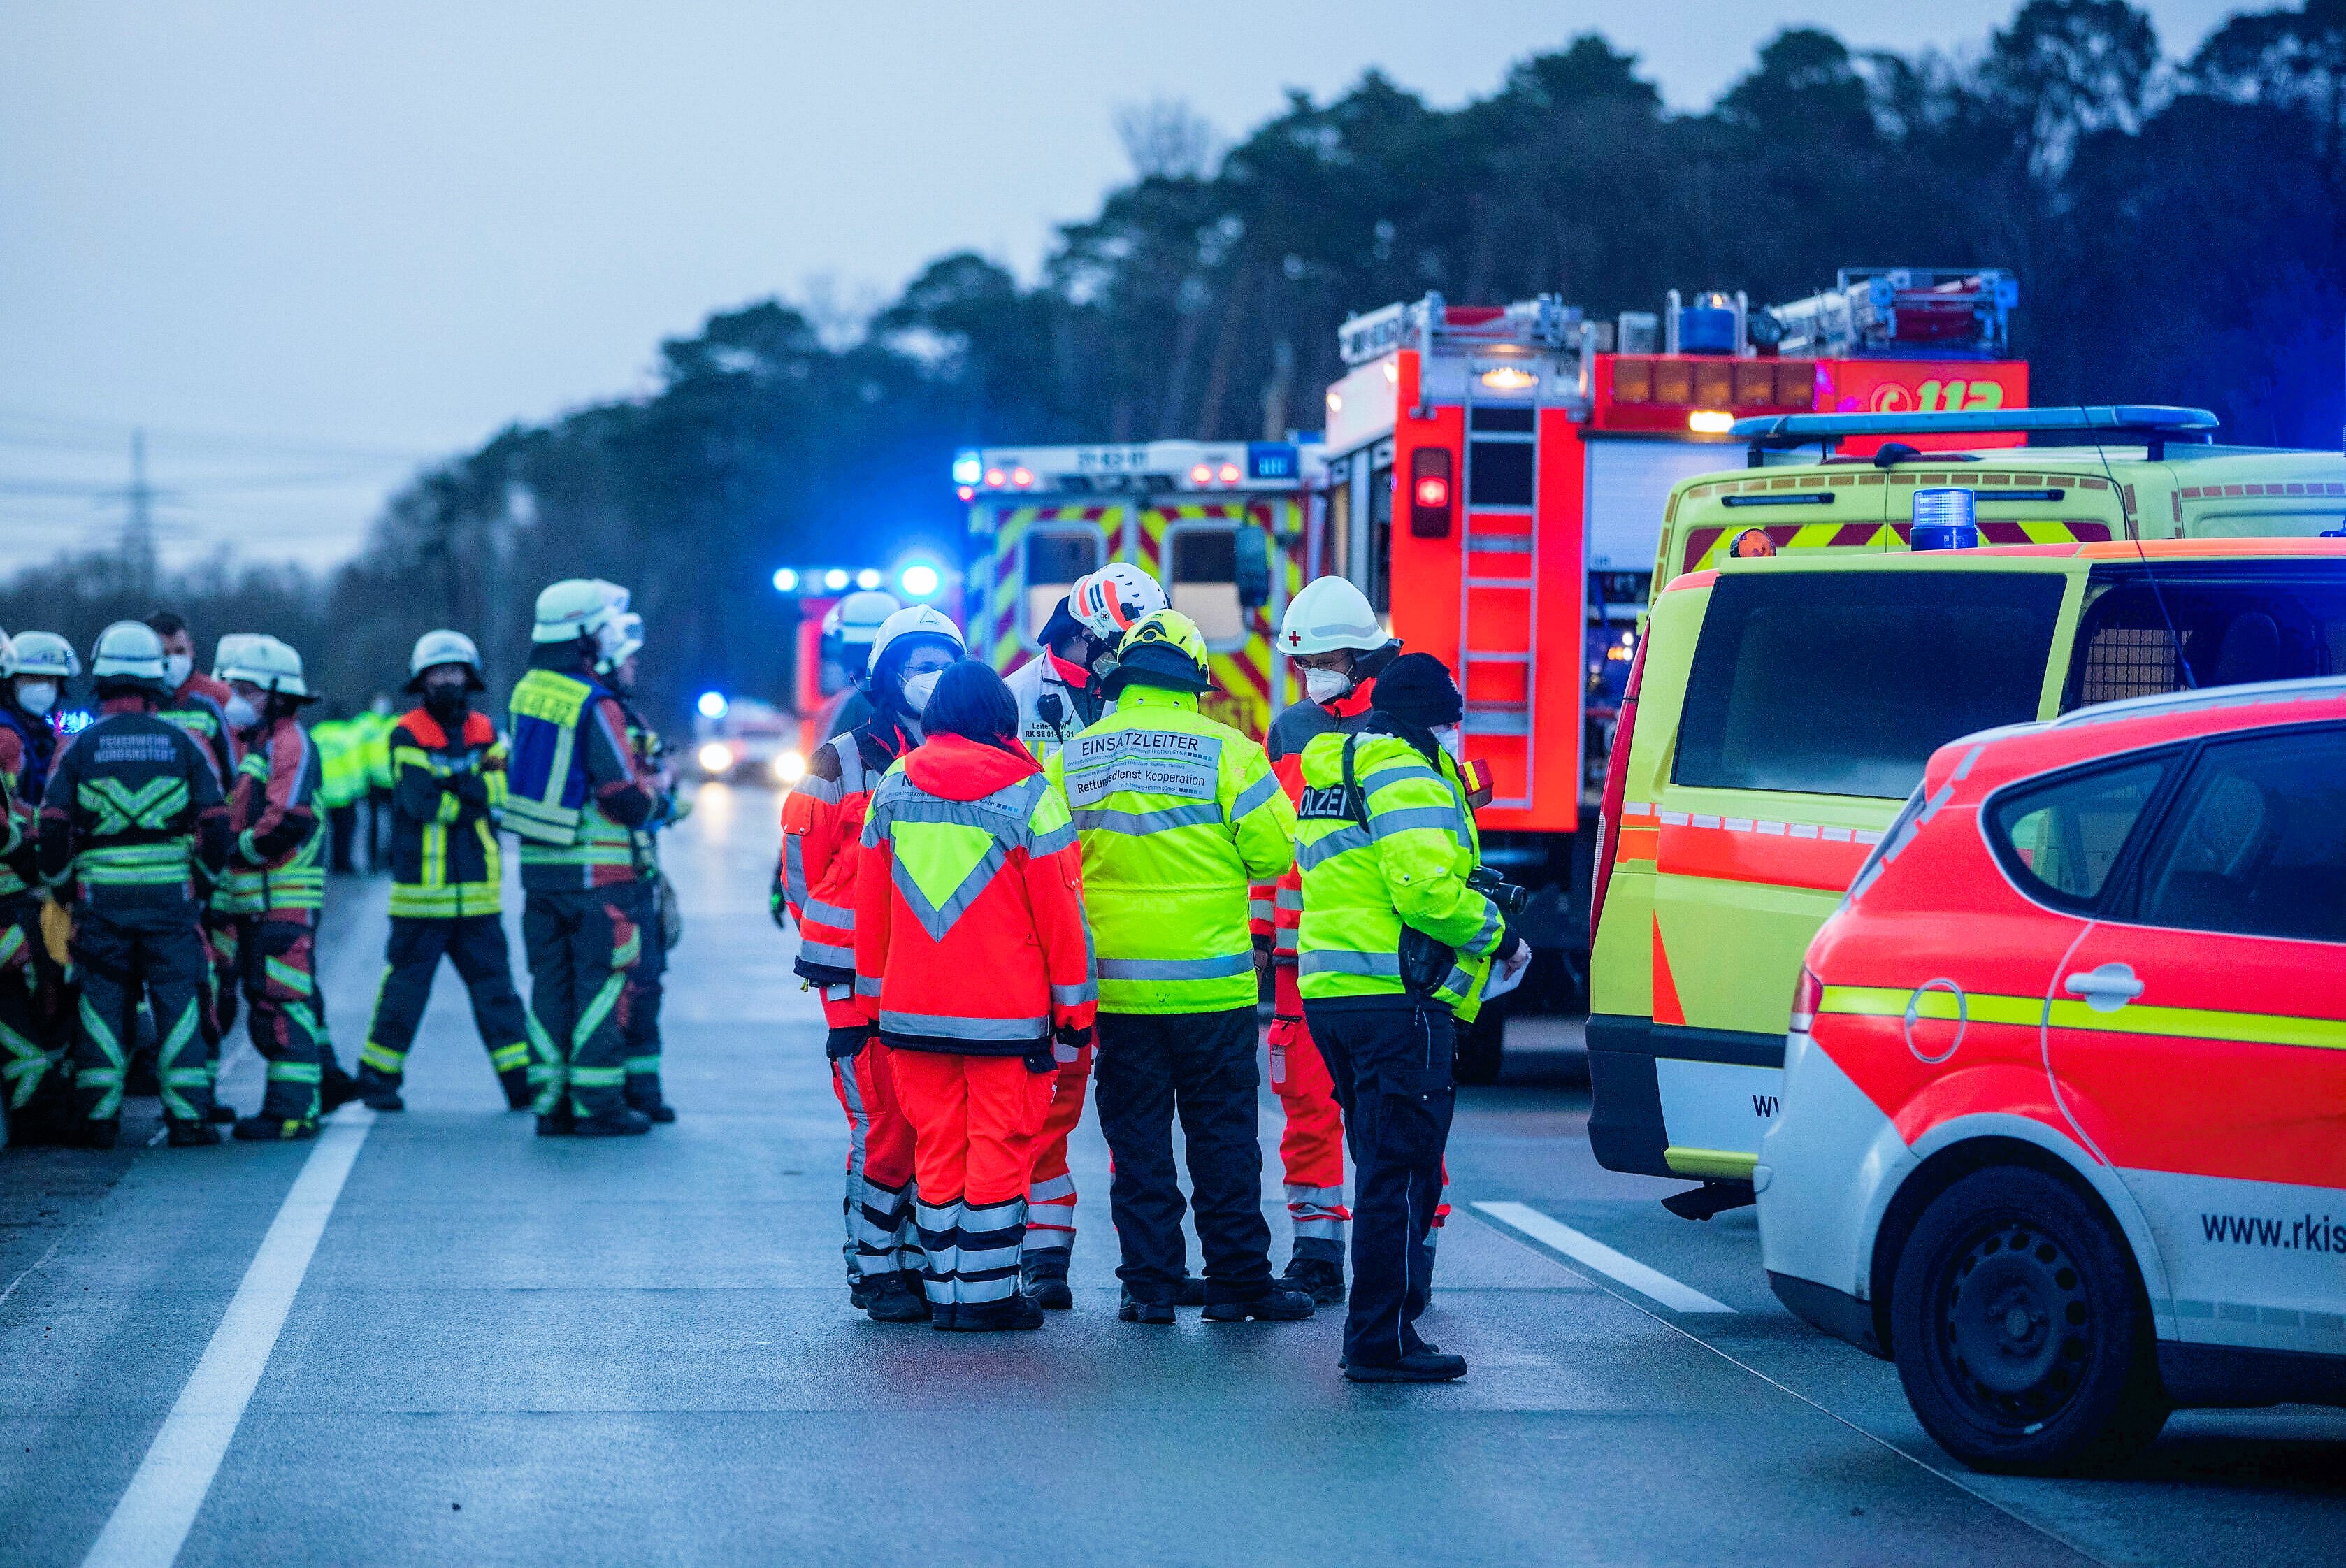 Massenkarambolage auf der Autobahn - Insgesamt 11 Personen wurden verletzt!